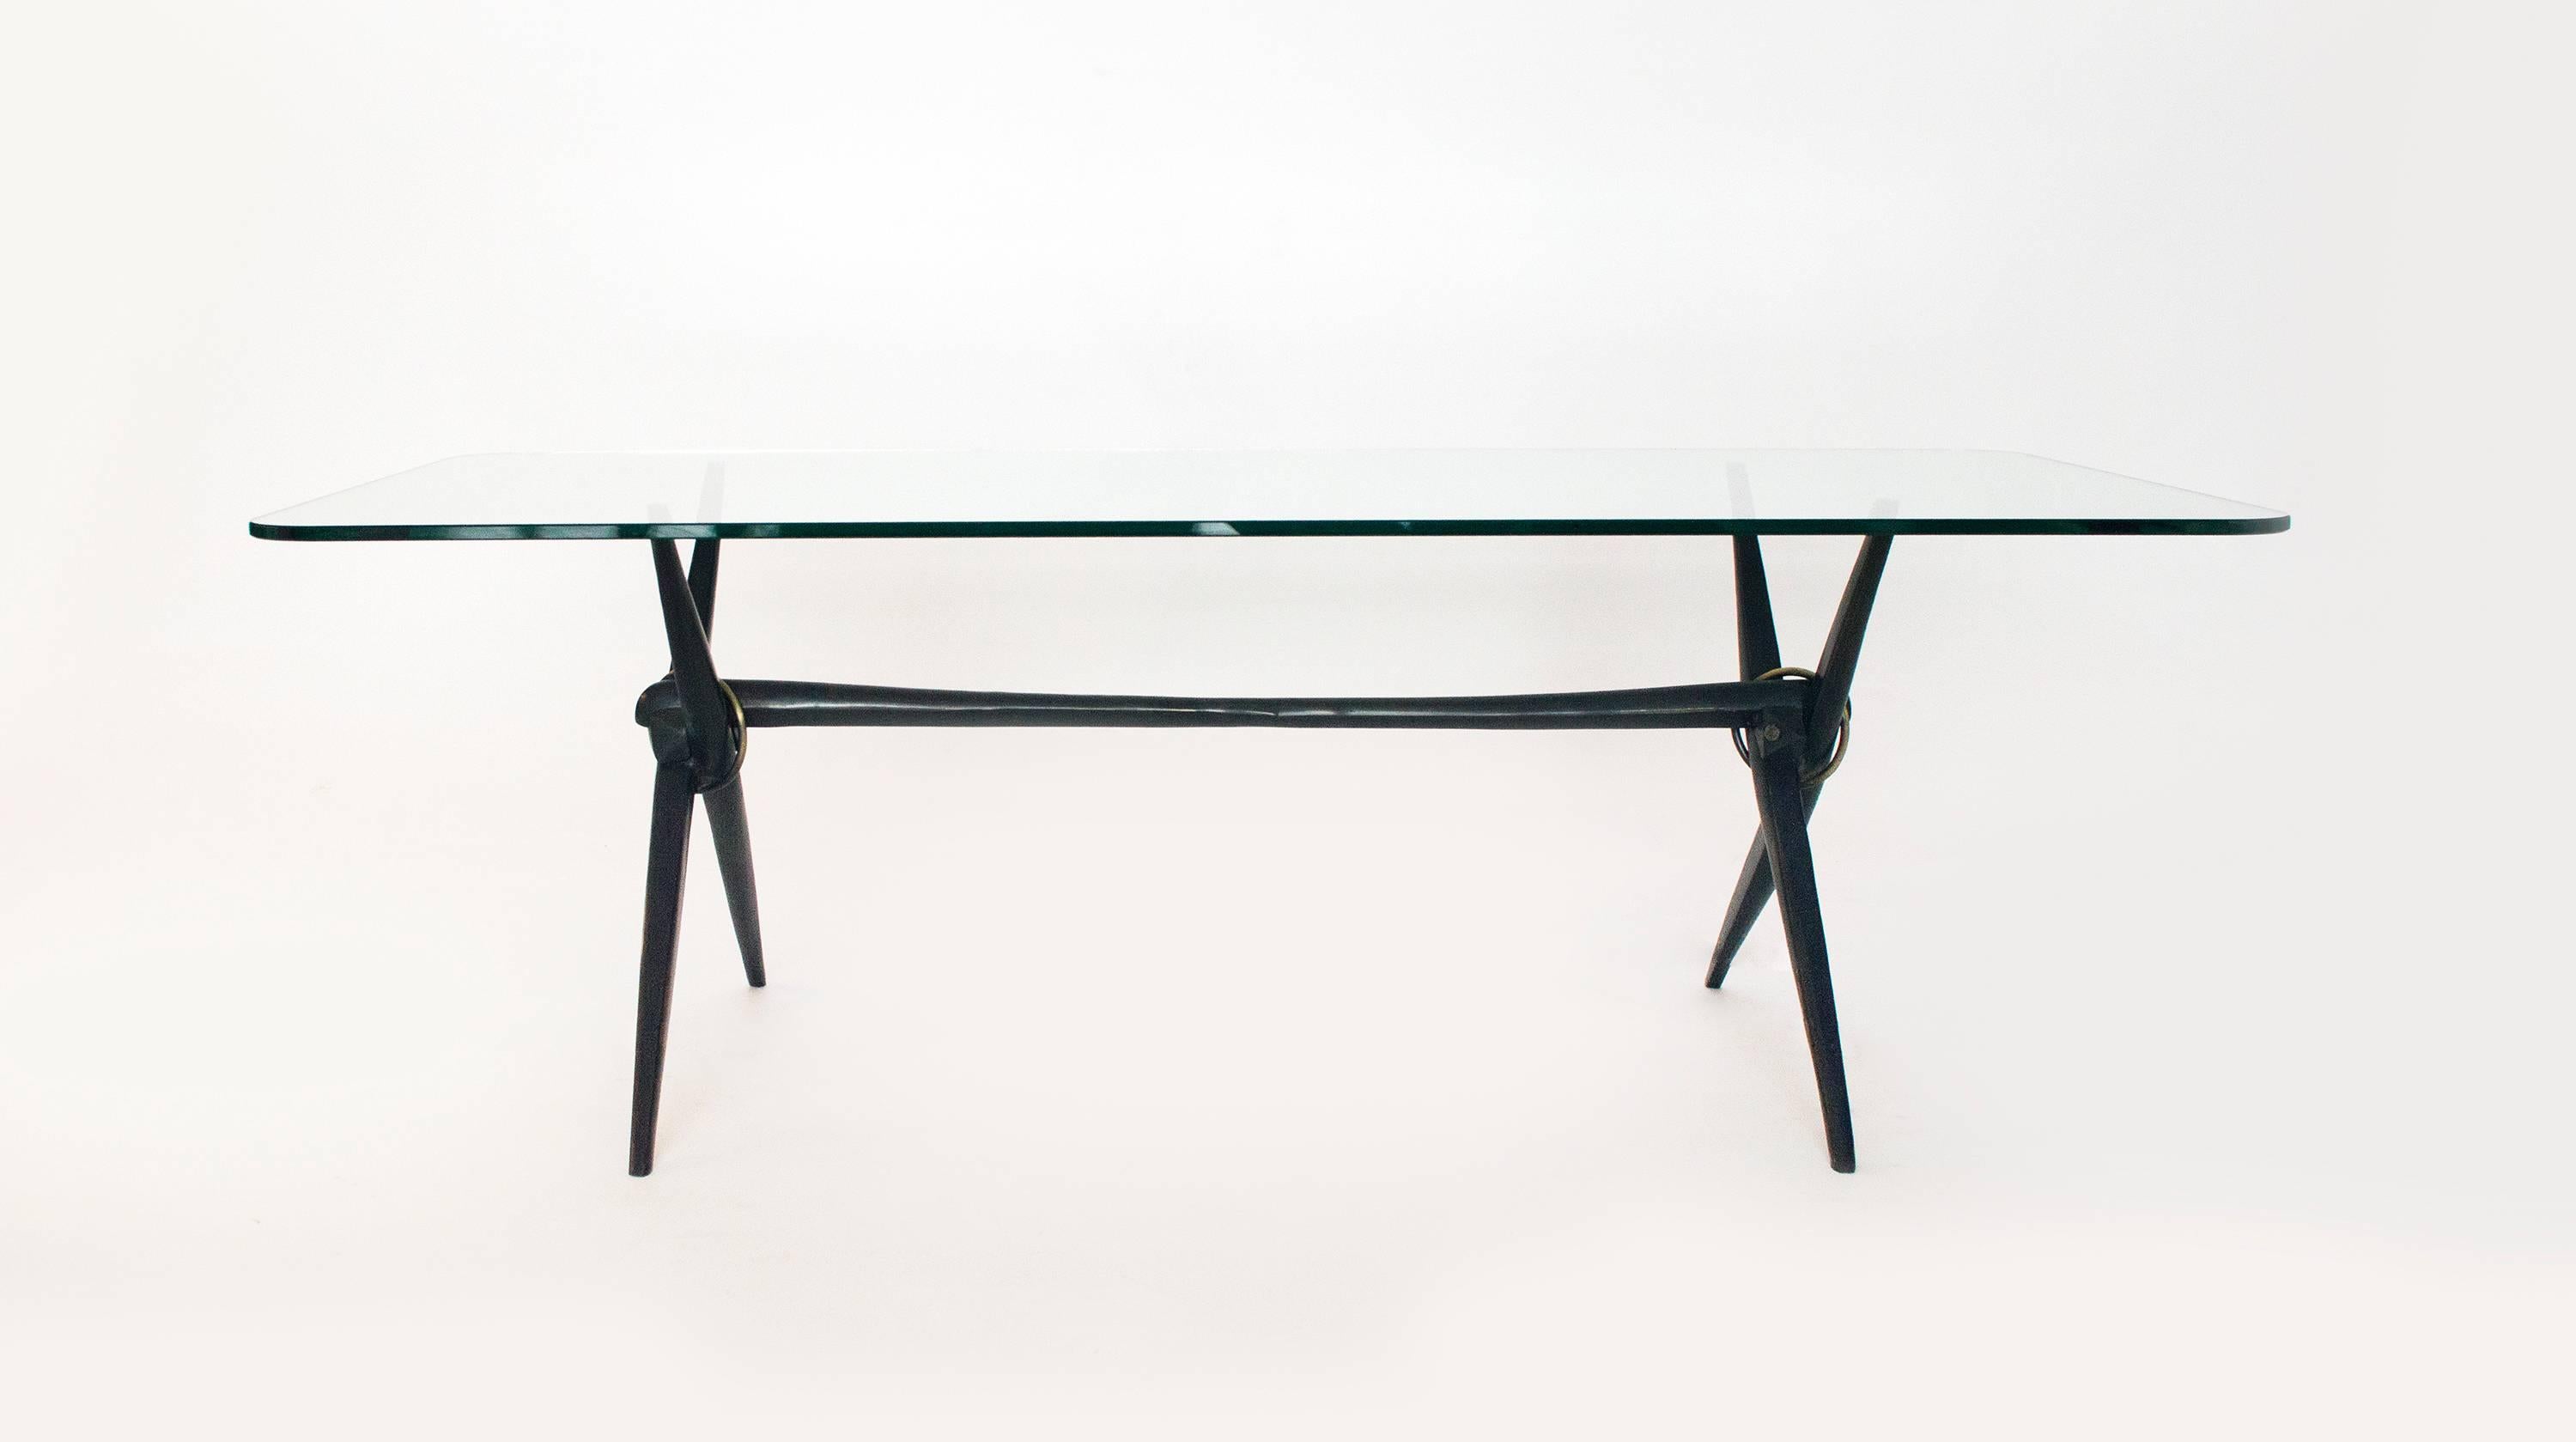 Dieser Tisch ist aus massiver Bronze gegossen und hebt sich damit von den üblichen Tischen ab. Er eignet sich gut als niedriger Beistelltisch oder als kleiner Couchtisch. Die eleganten, konisch zulaufenden Beine werden an der Kreuzung mit dem